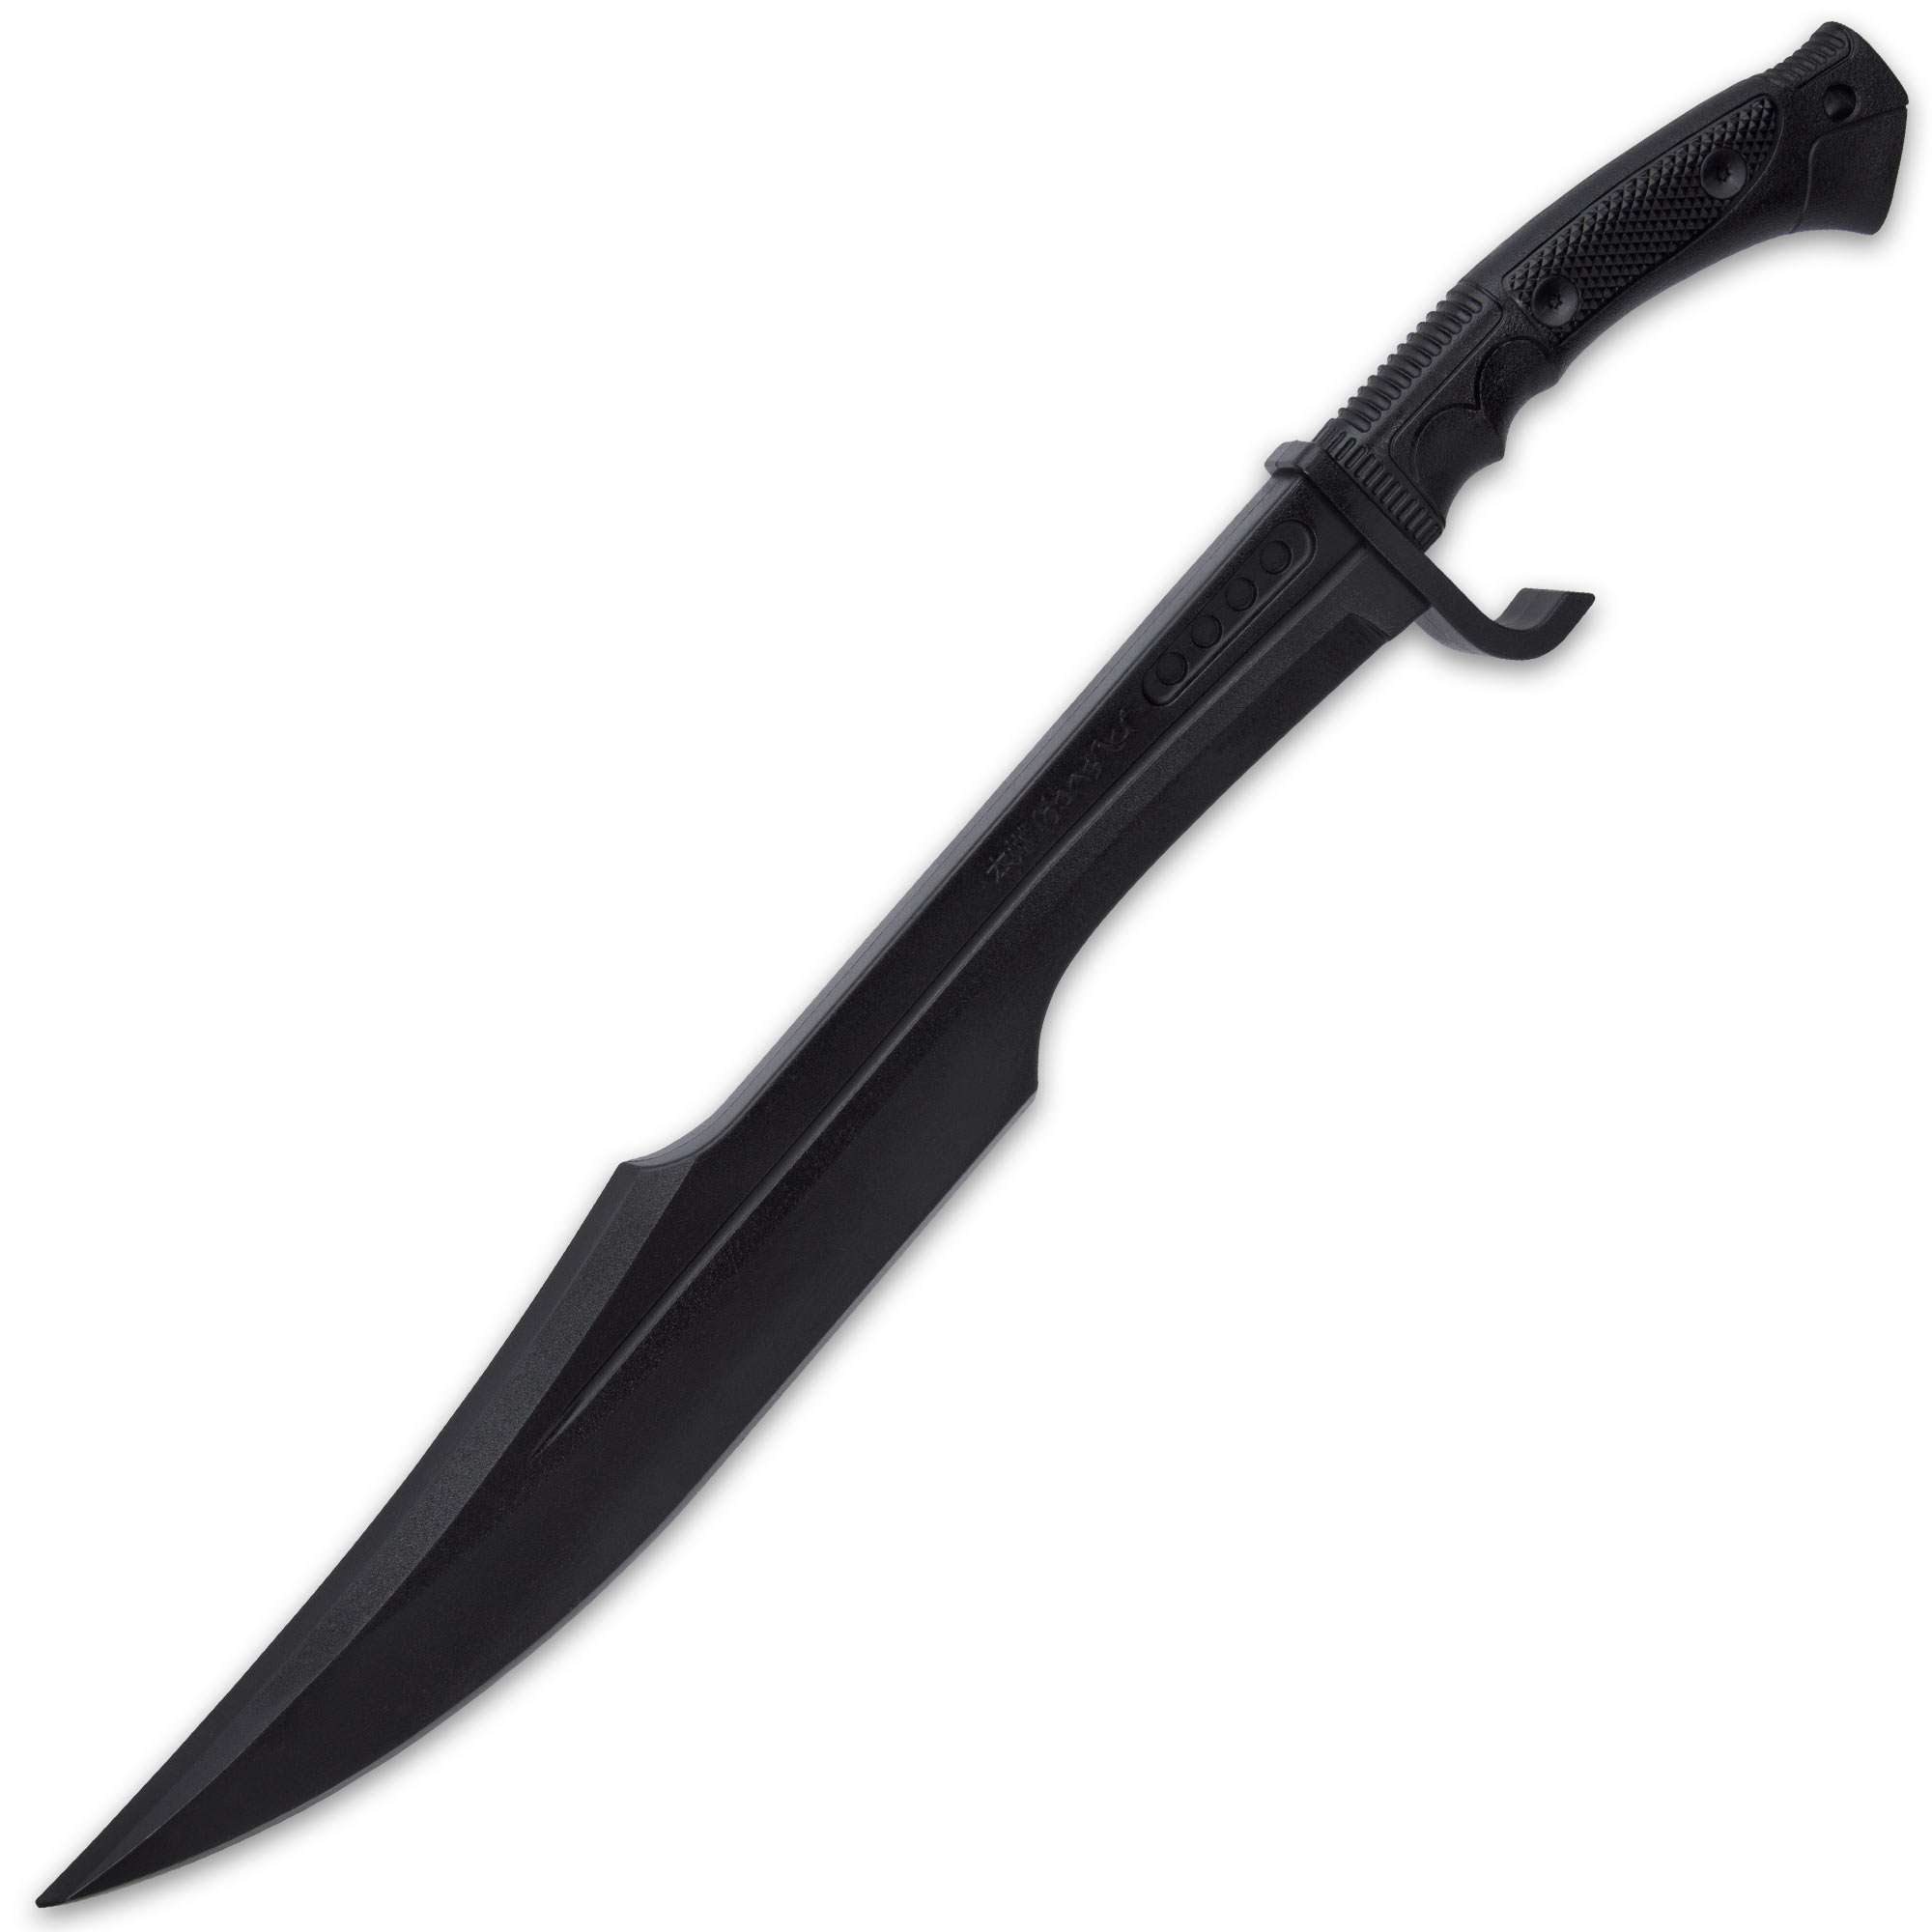 Honshu Practice Spartan Sword